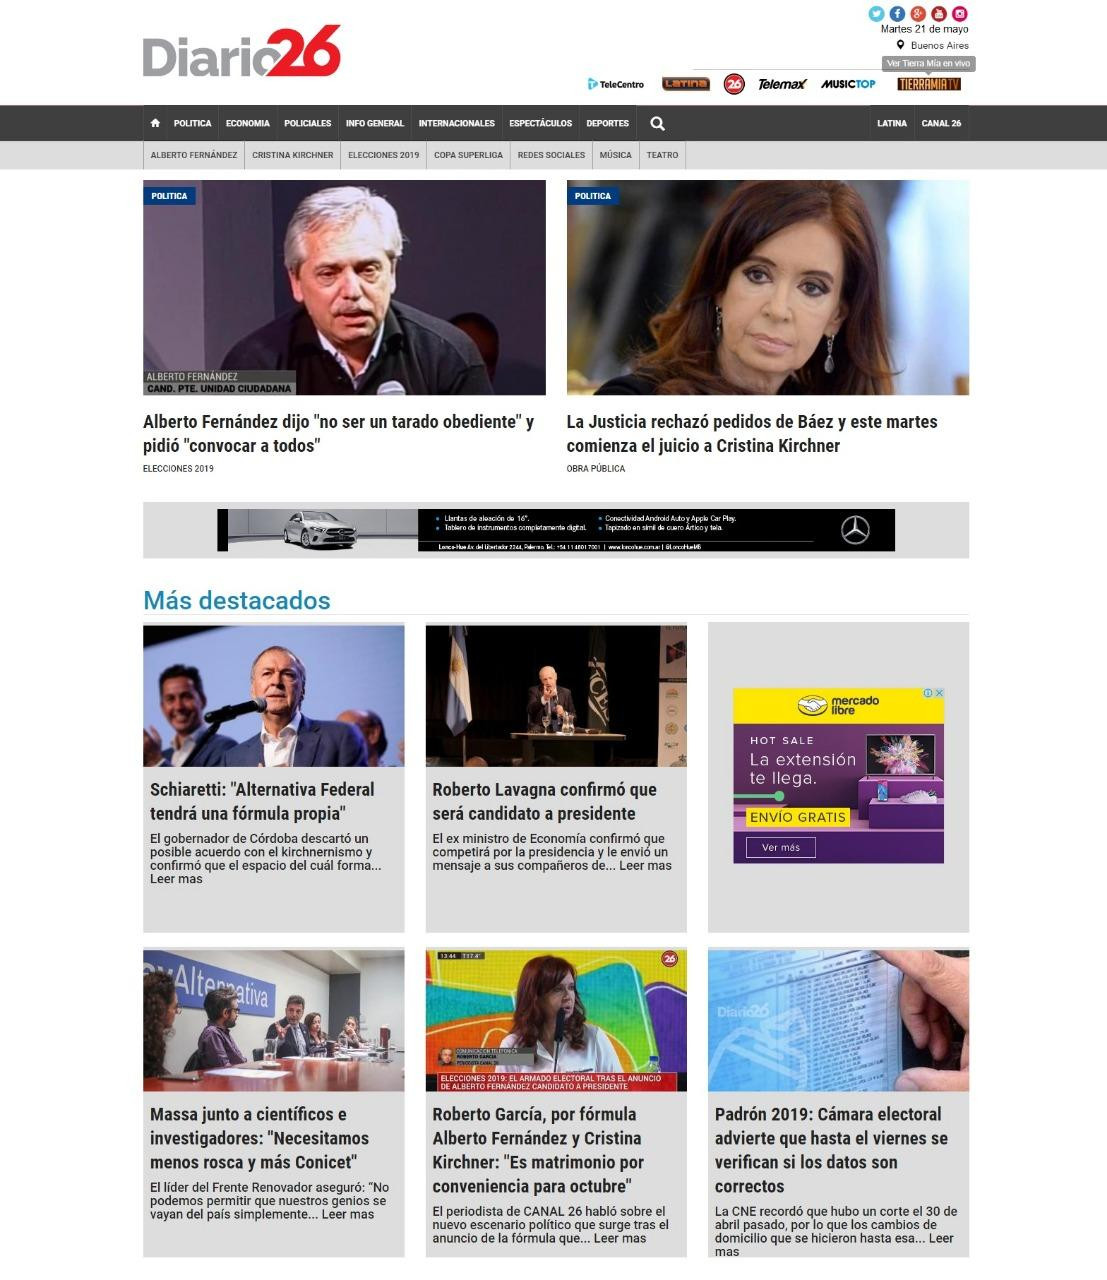 Tapas de diarios - Diario 26 martes 21-05-19